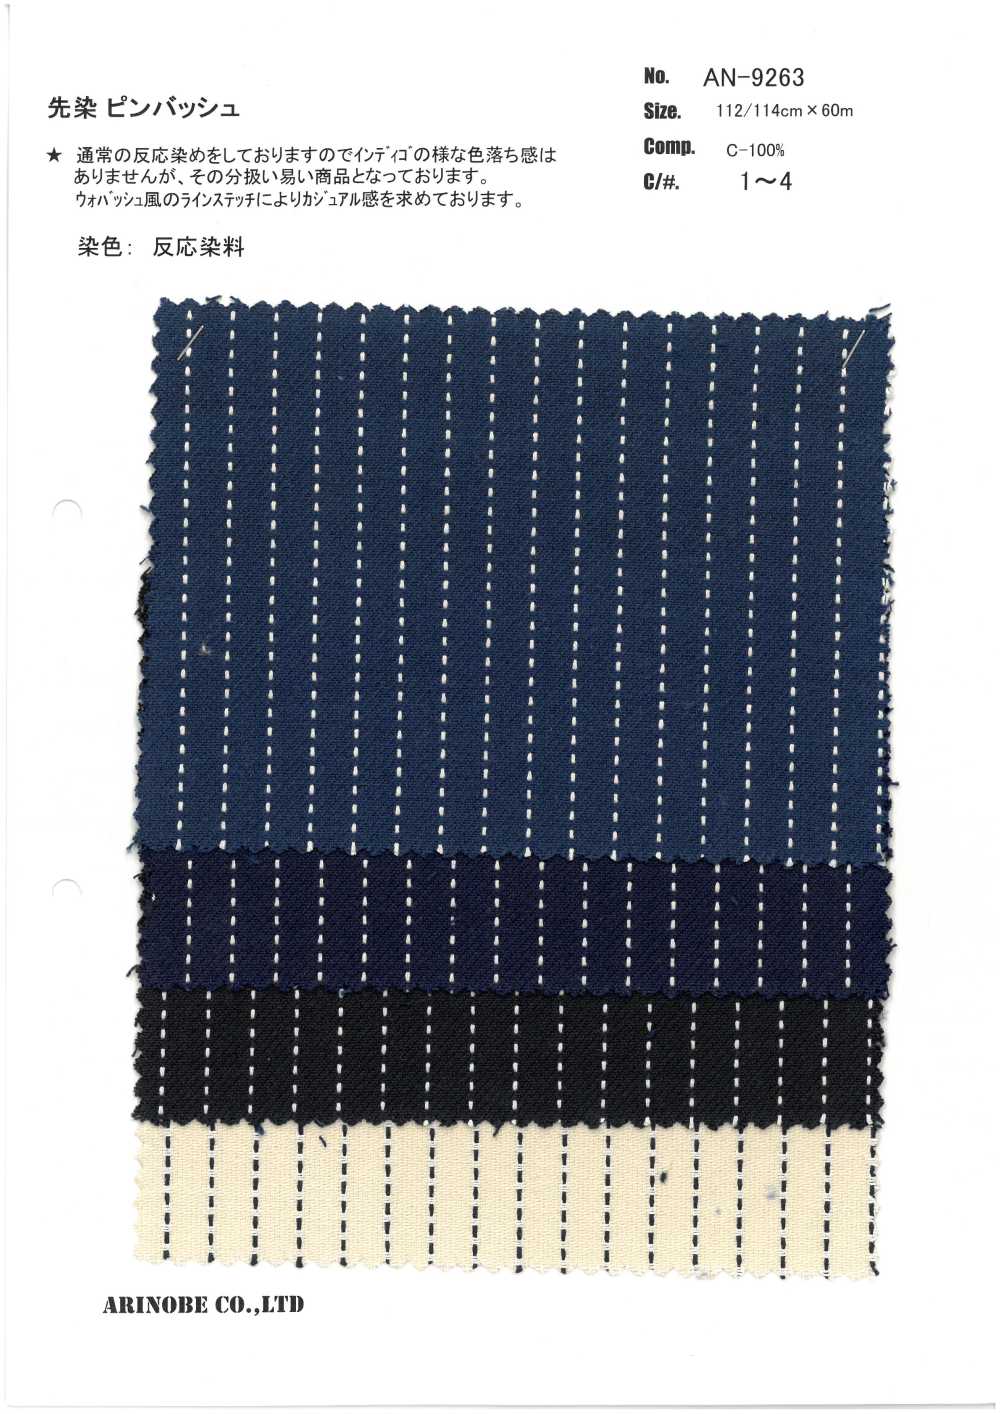 AN-9263 Yarn Dyed Pin Bash[Textile / Fabric] ARINOBE CO., LTD.